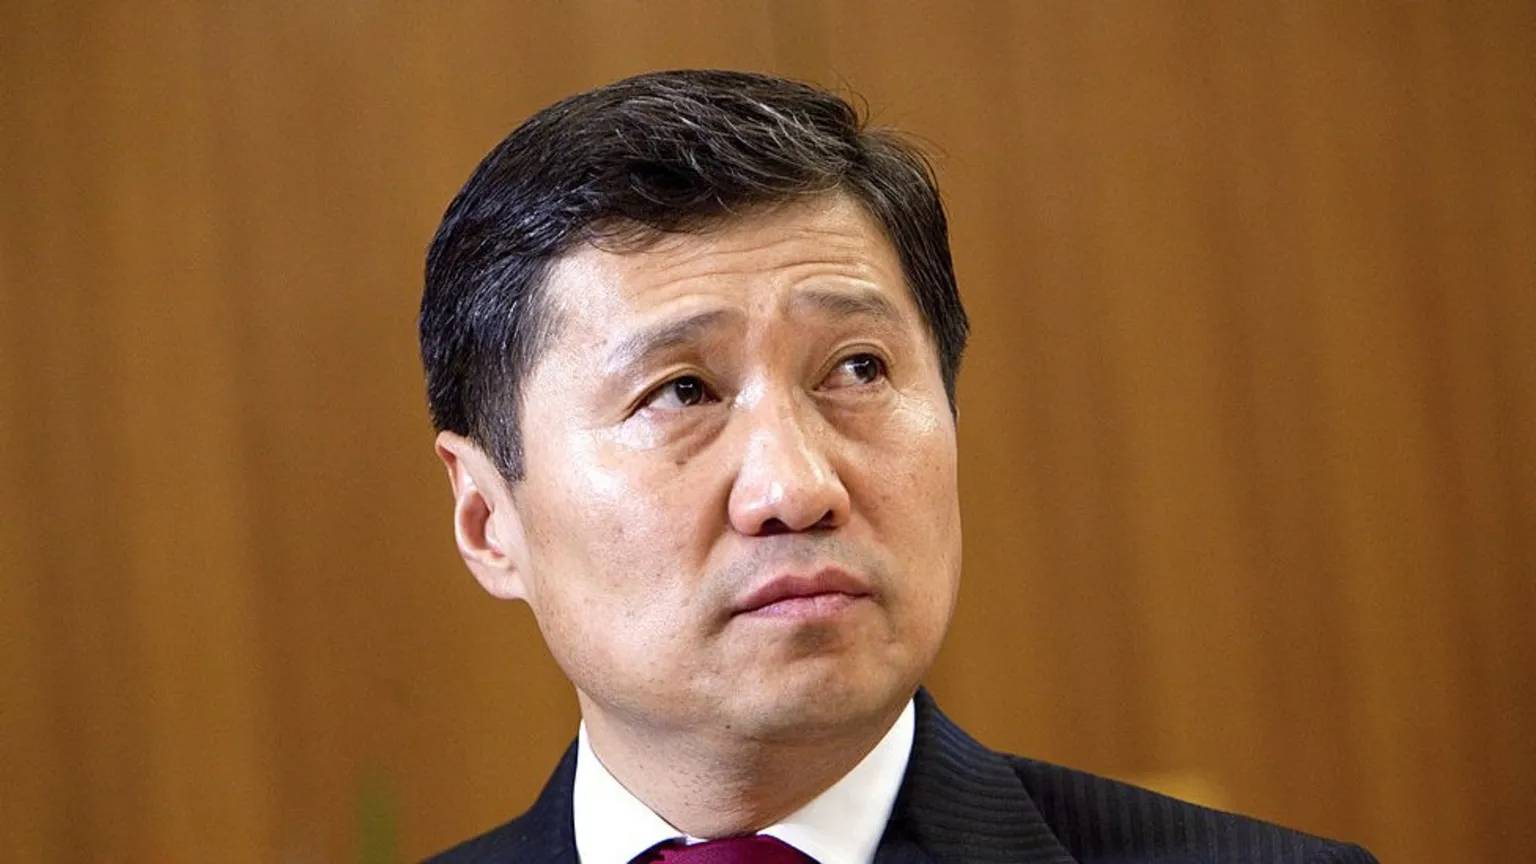 Moğolistan'ın eski başbakanı, yolsuzluk fonlarıyla New York'ta lüks daireler satın almakla suçlandı